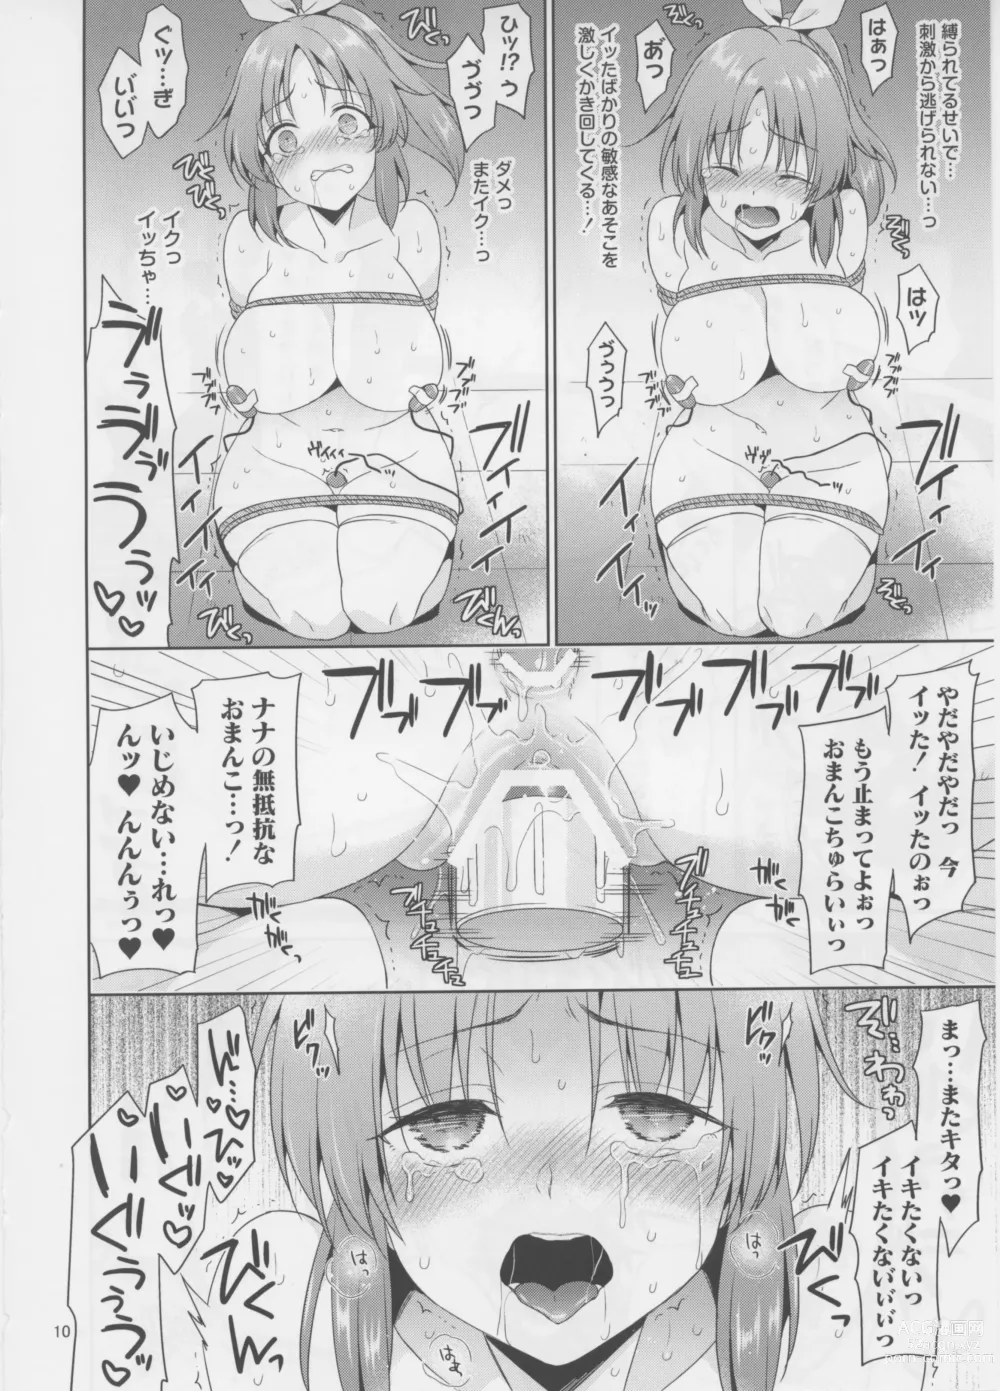 Page 10 of doujinshi Usamin Ryoujoku Monogatari 1.7